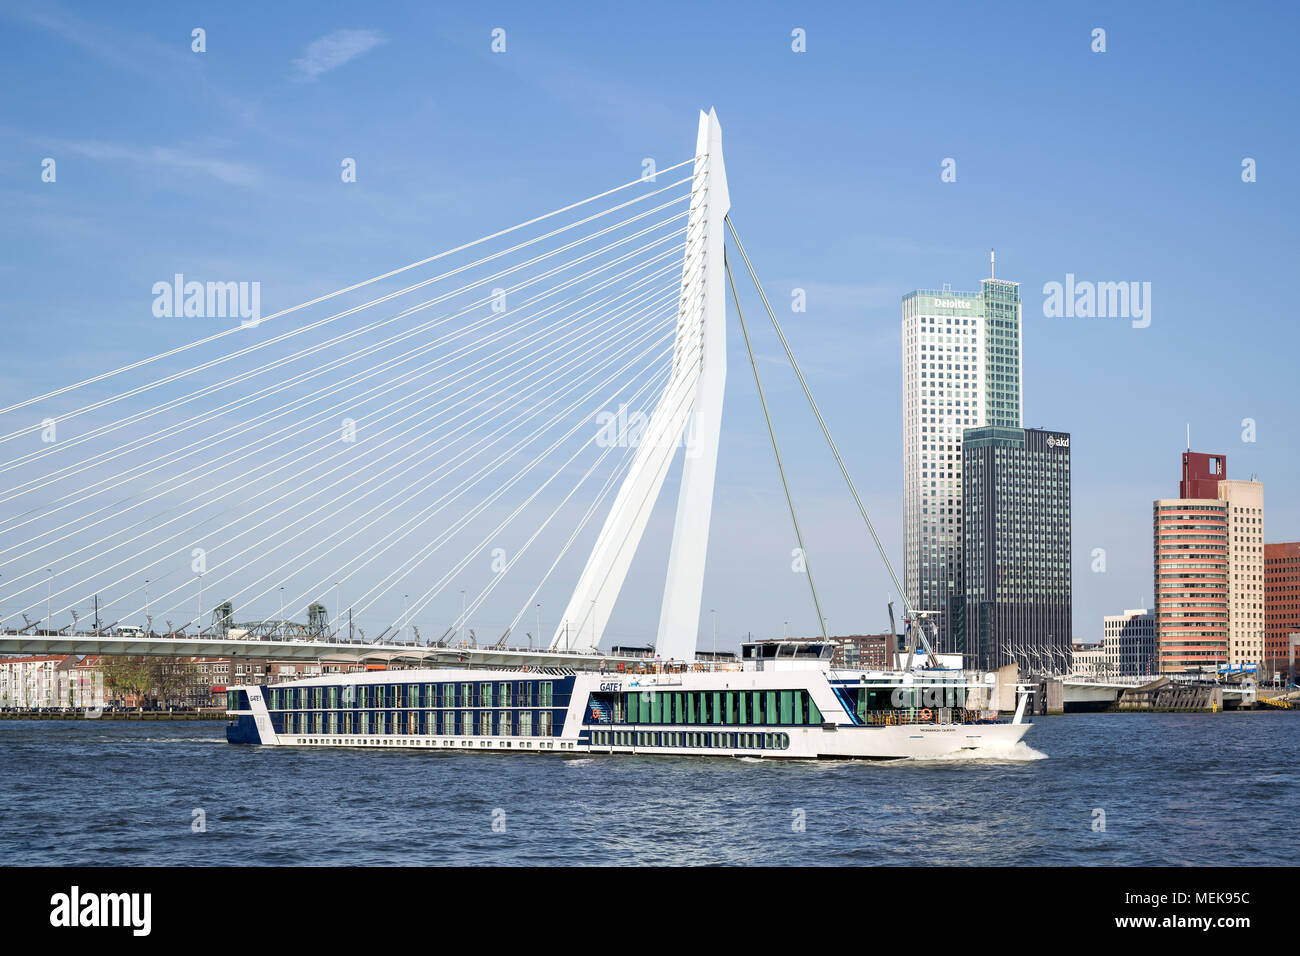 River Cruise Ship MONARCH KÖNIGIN von Tor 1 auf dem Fluss Nieuwe Maas in Rotterdam, Niederlande Stockfoto